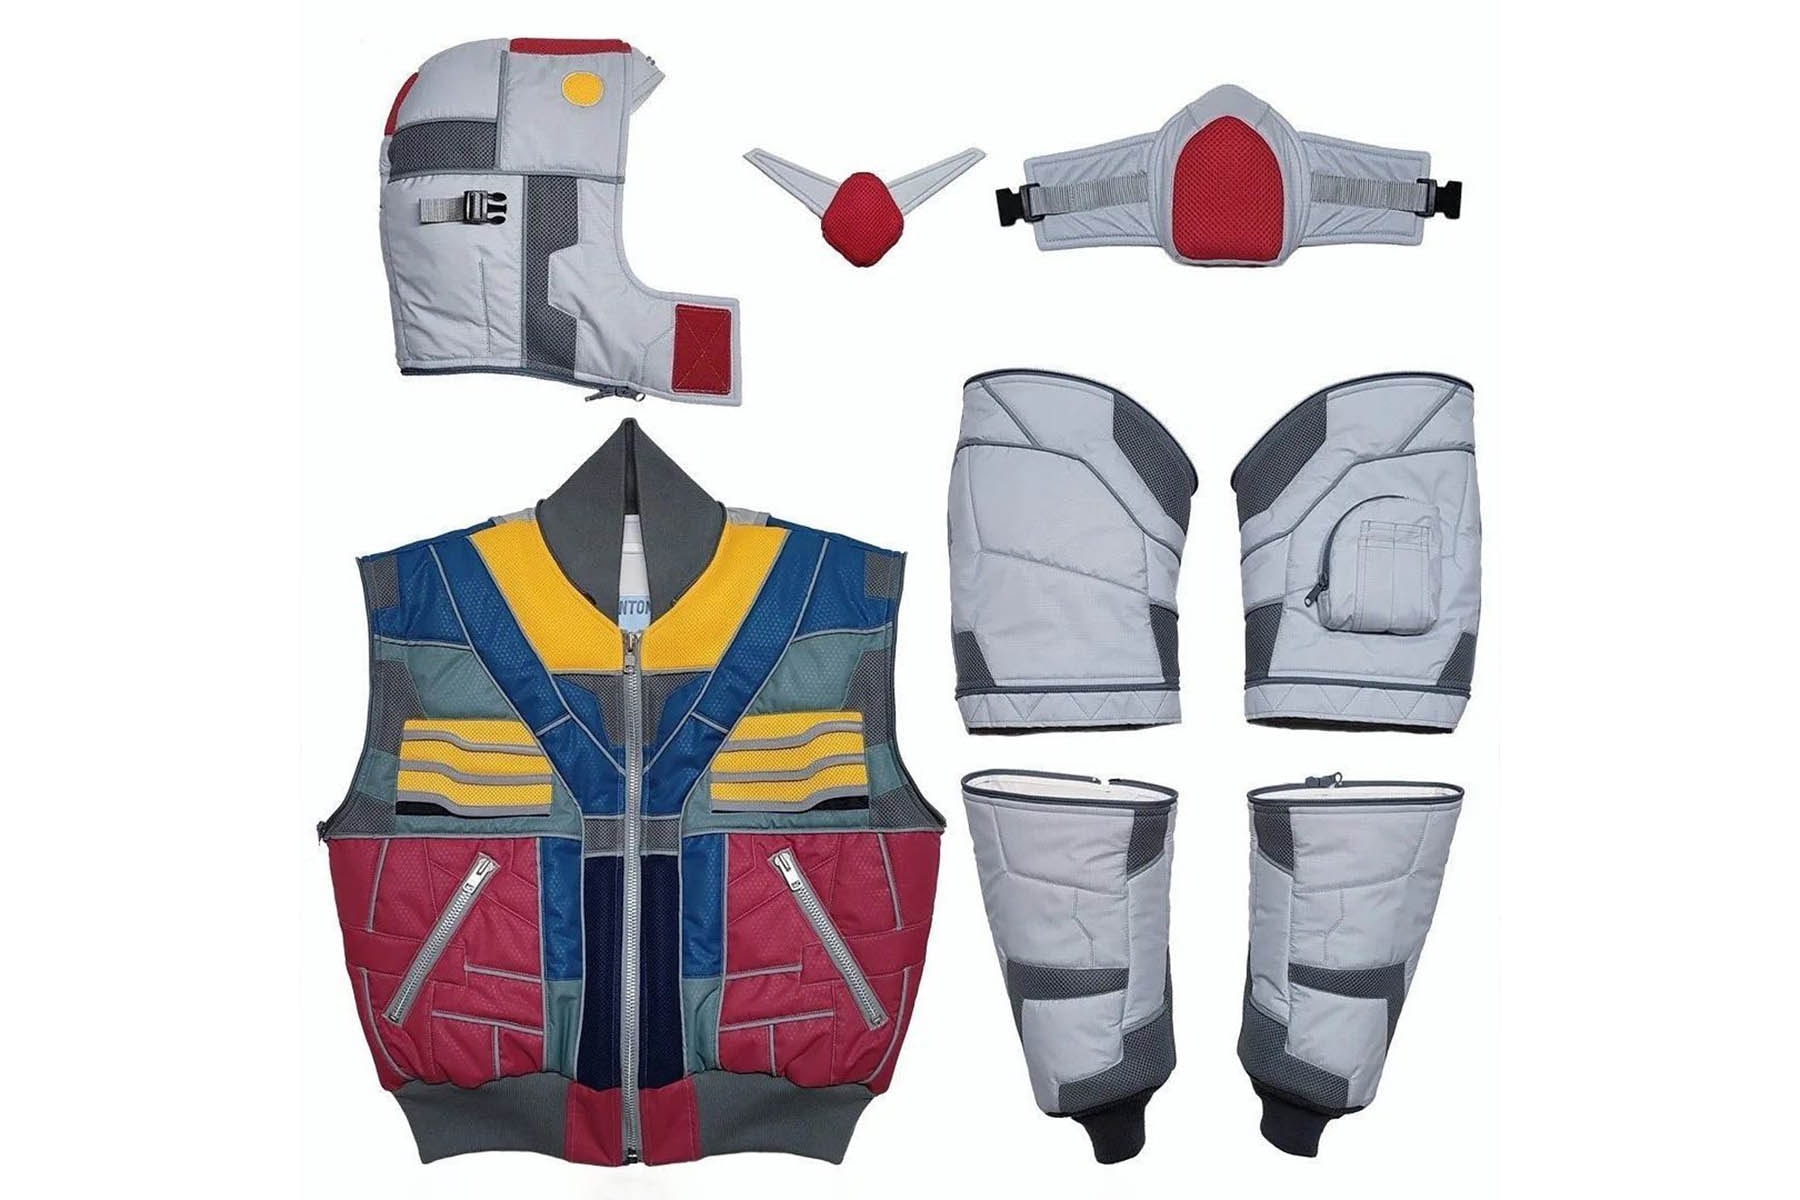 東京手製單位 MEMENTOMORI 打造《機動戰士鋼彈 Gundam》主題雙面穿飛行外套